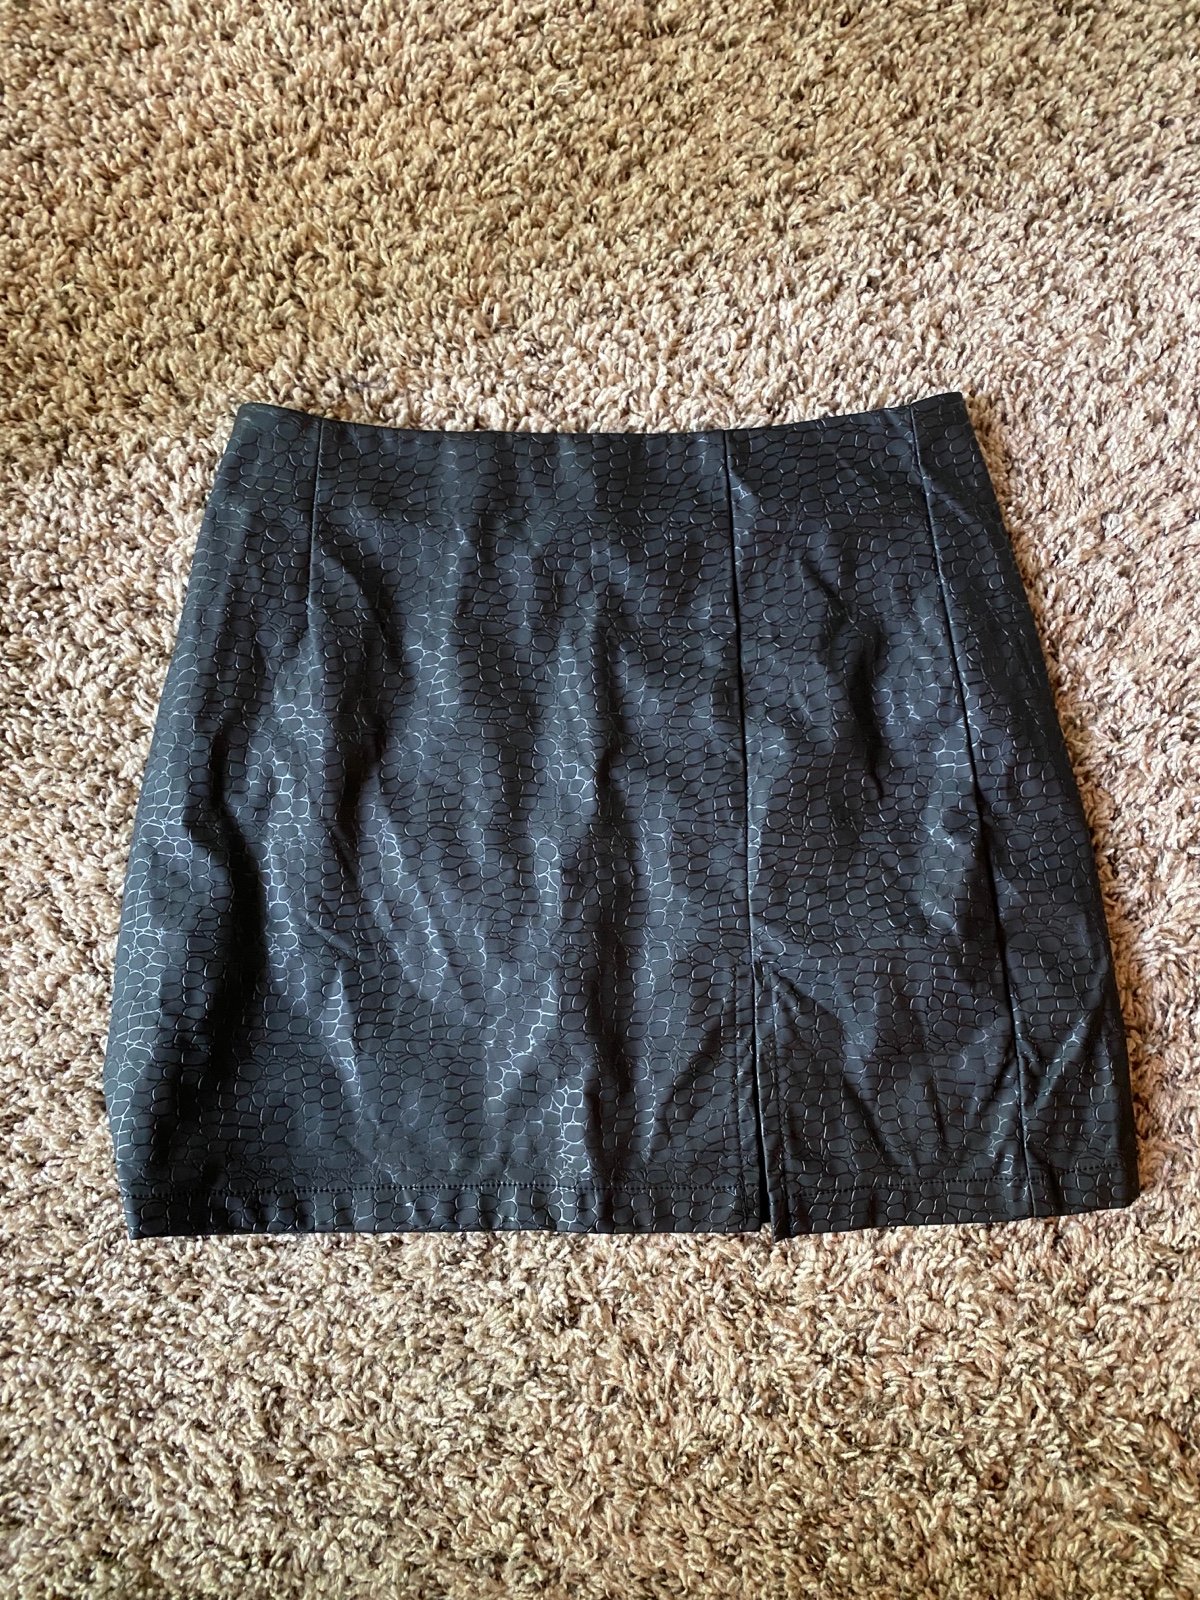 good price Black Snakeskin Print Mini Skirt - Size Smal